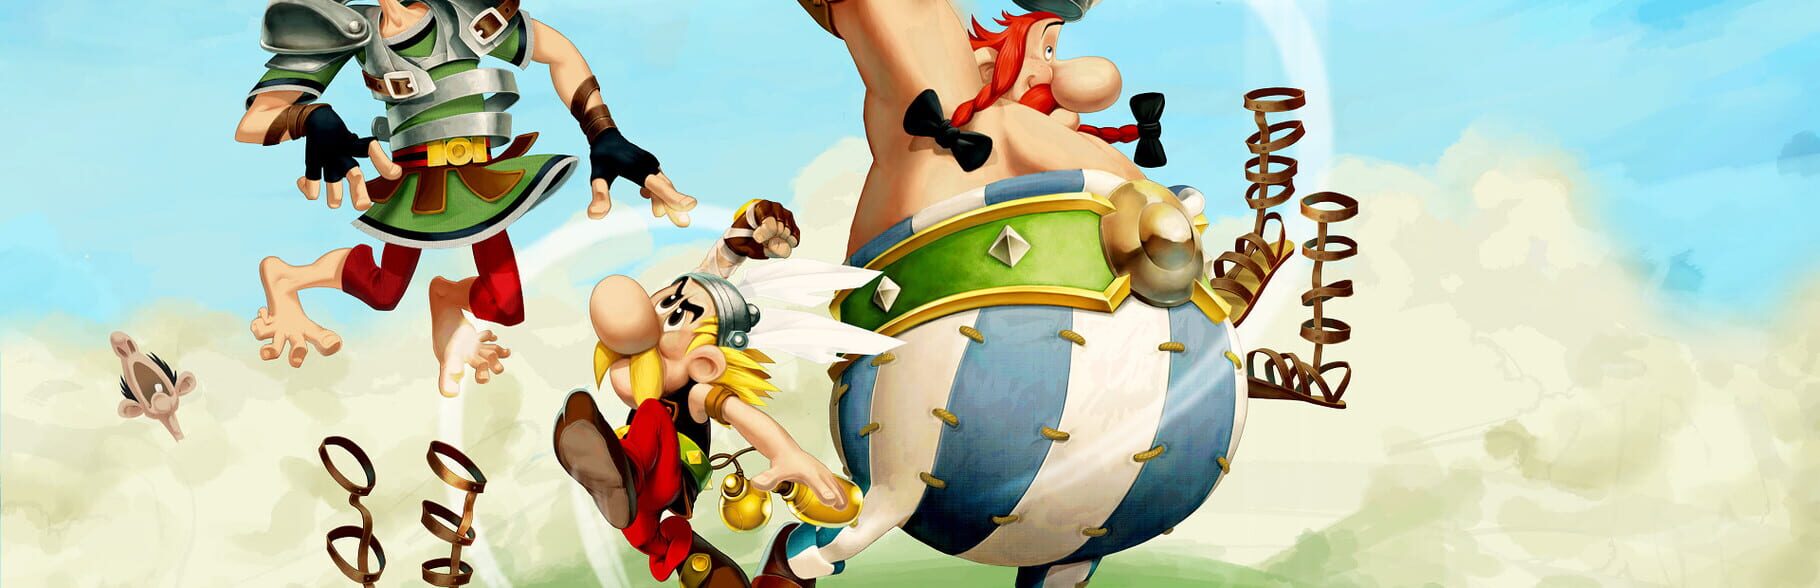 Arte - Asterix & Obelix XXL 2